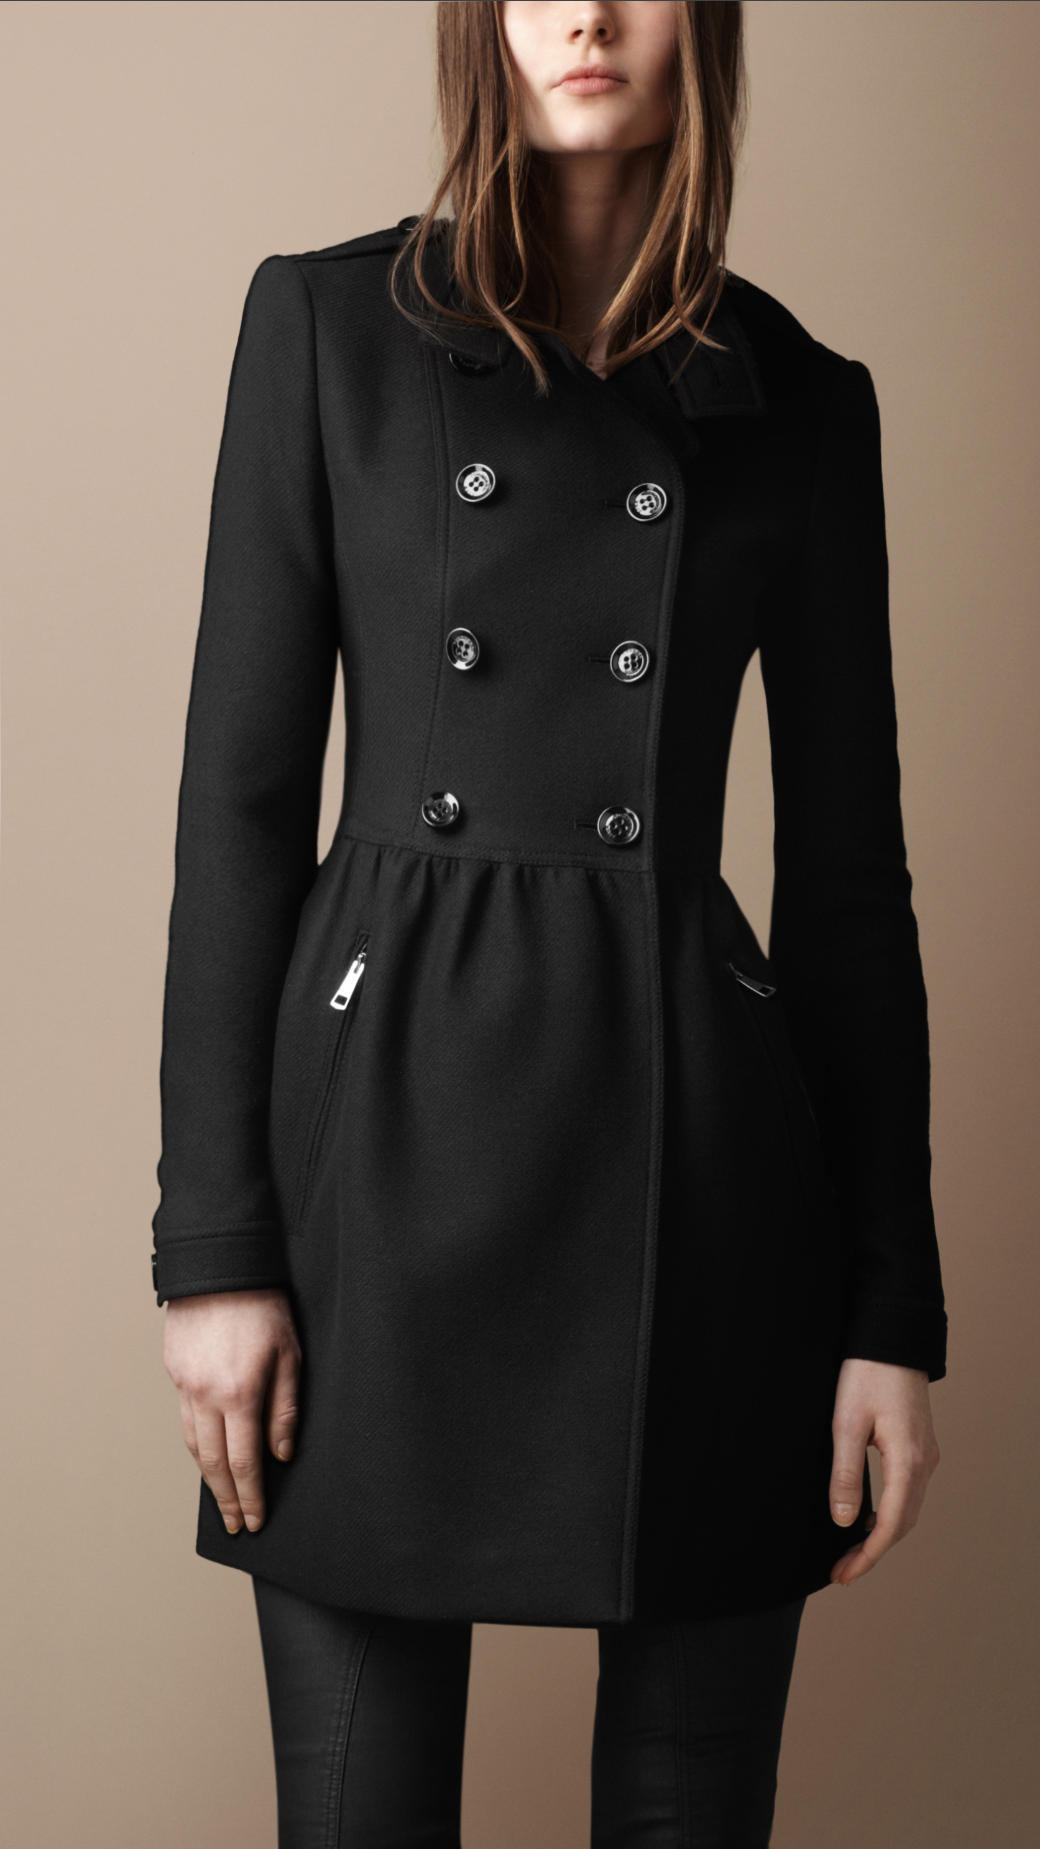 Lyst - Burberry Brit Wool Twill Dress Coat in Black